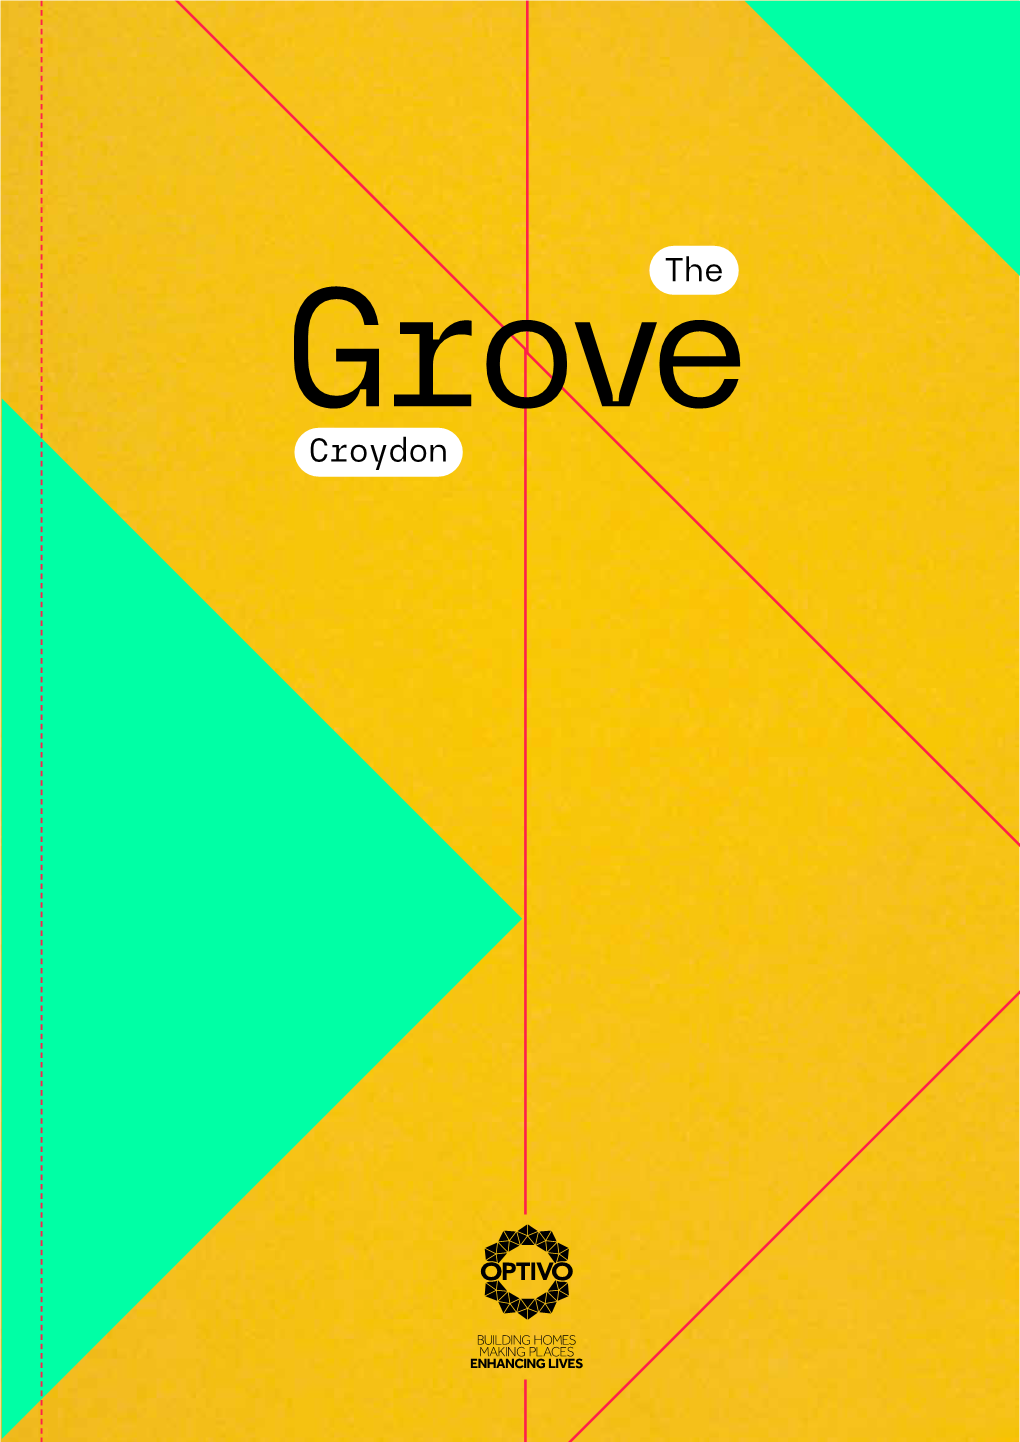 Croydon 01 Introduction the Grove – Croydon